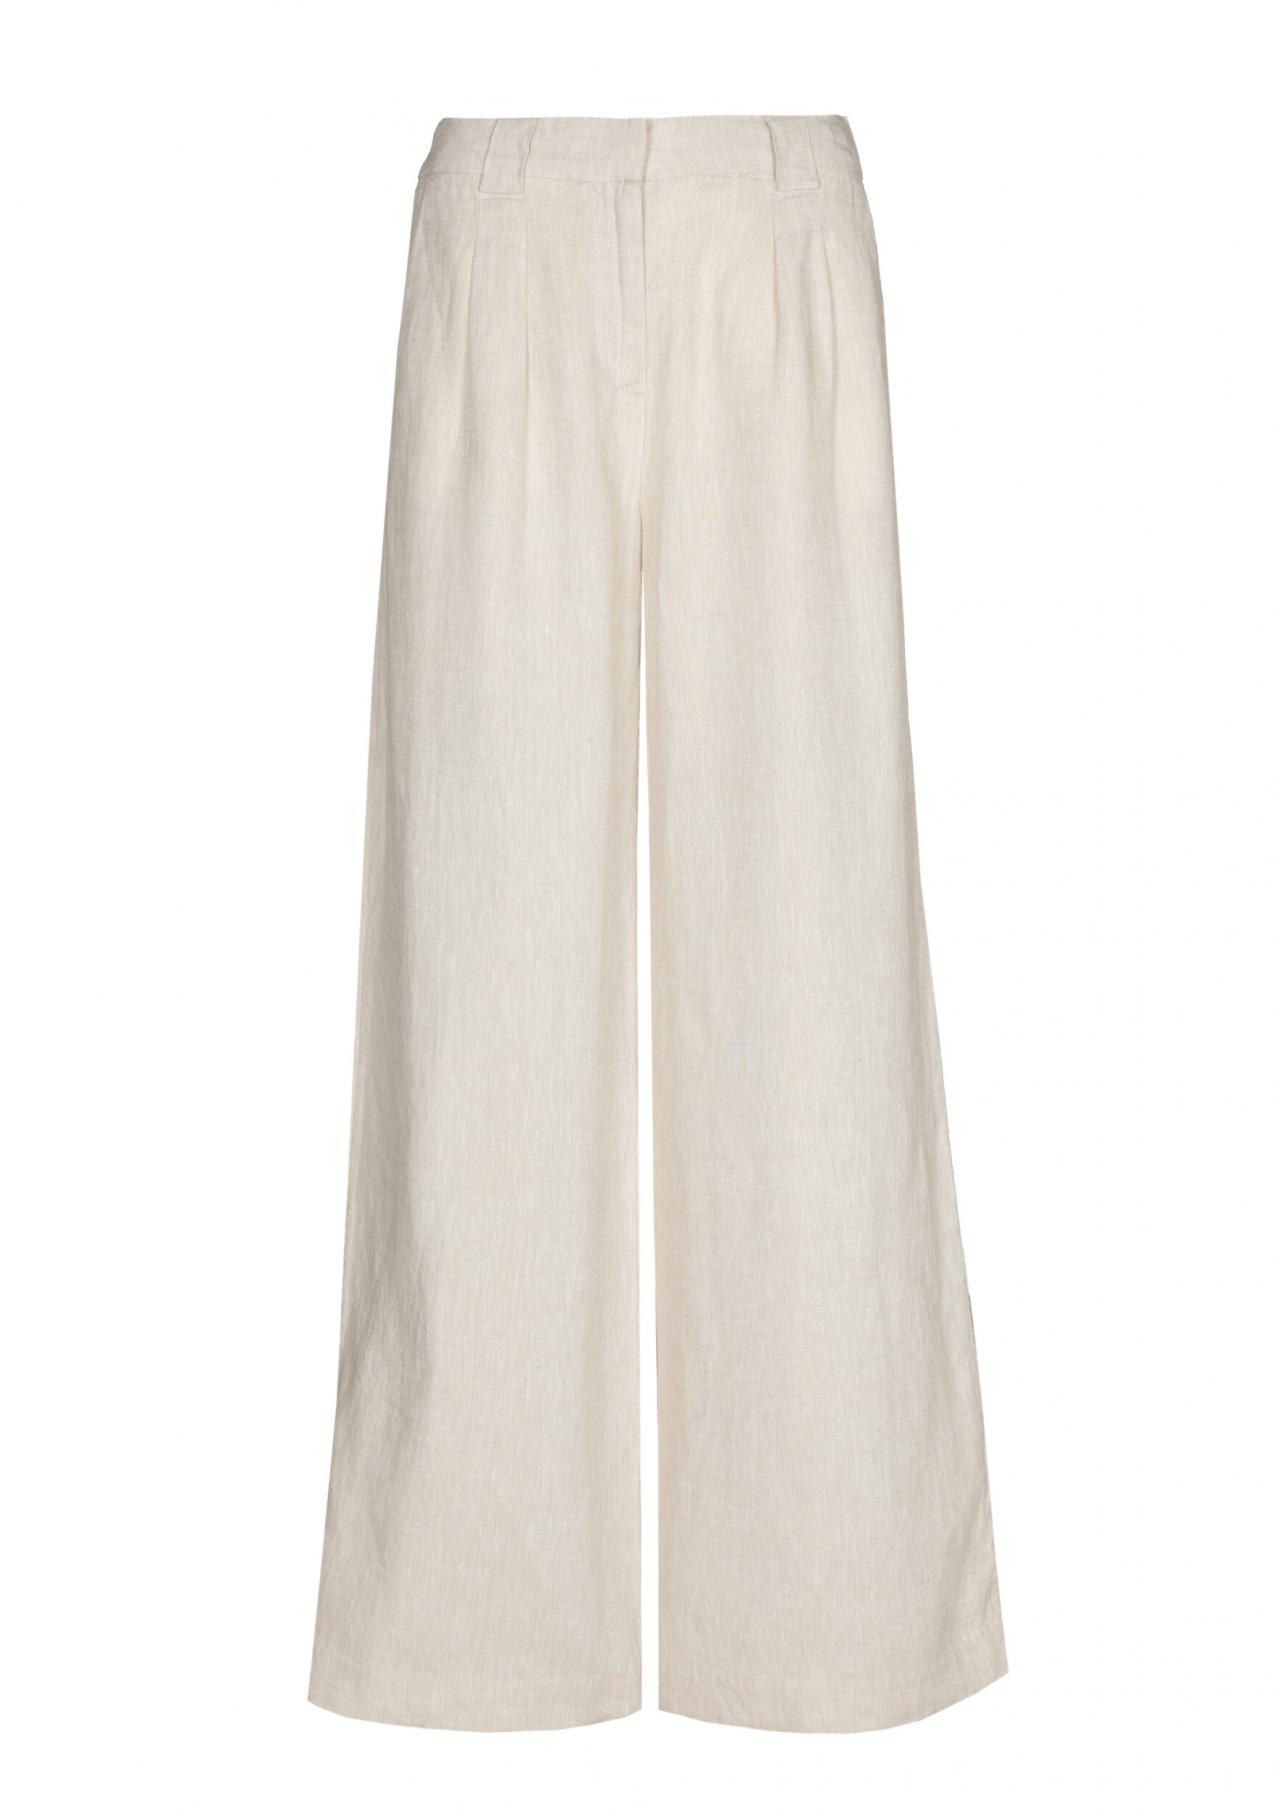 Witte linnen broek – € 39,99 - C&A.